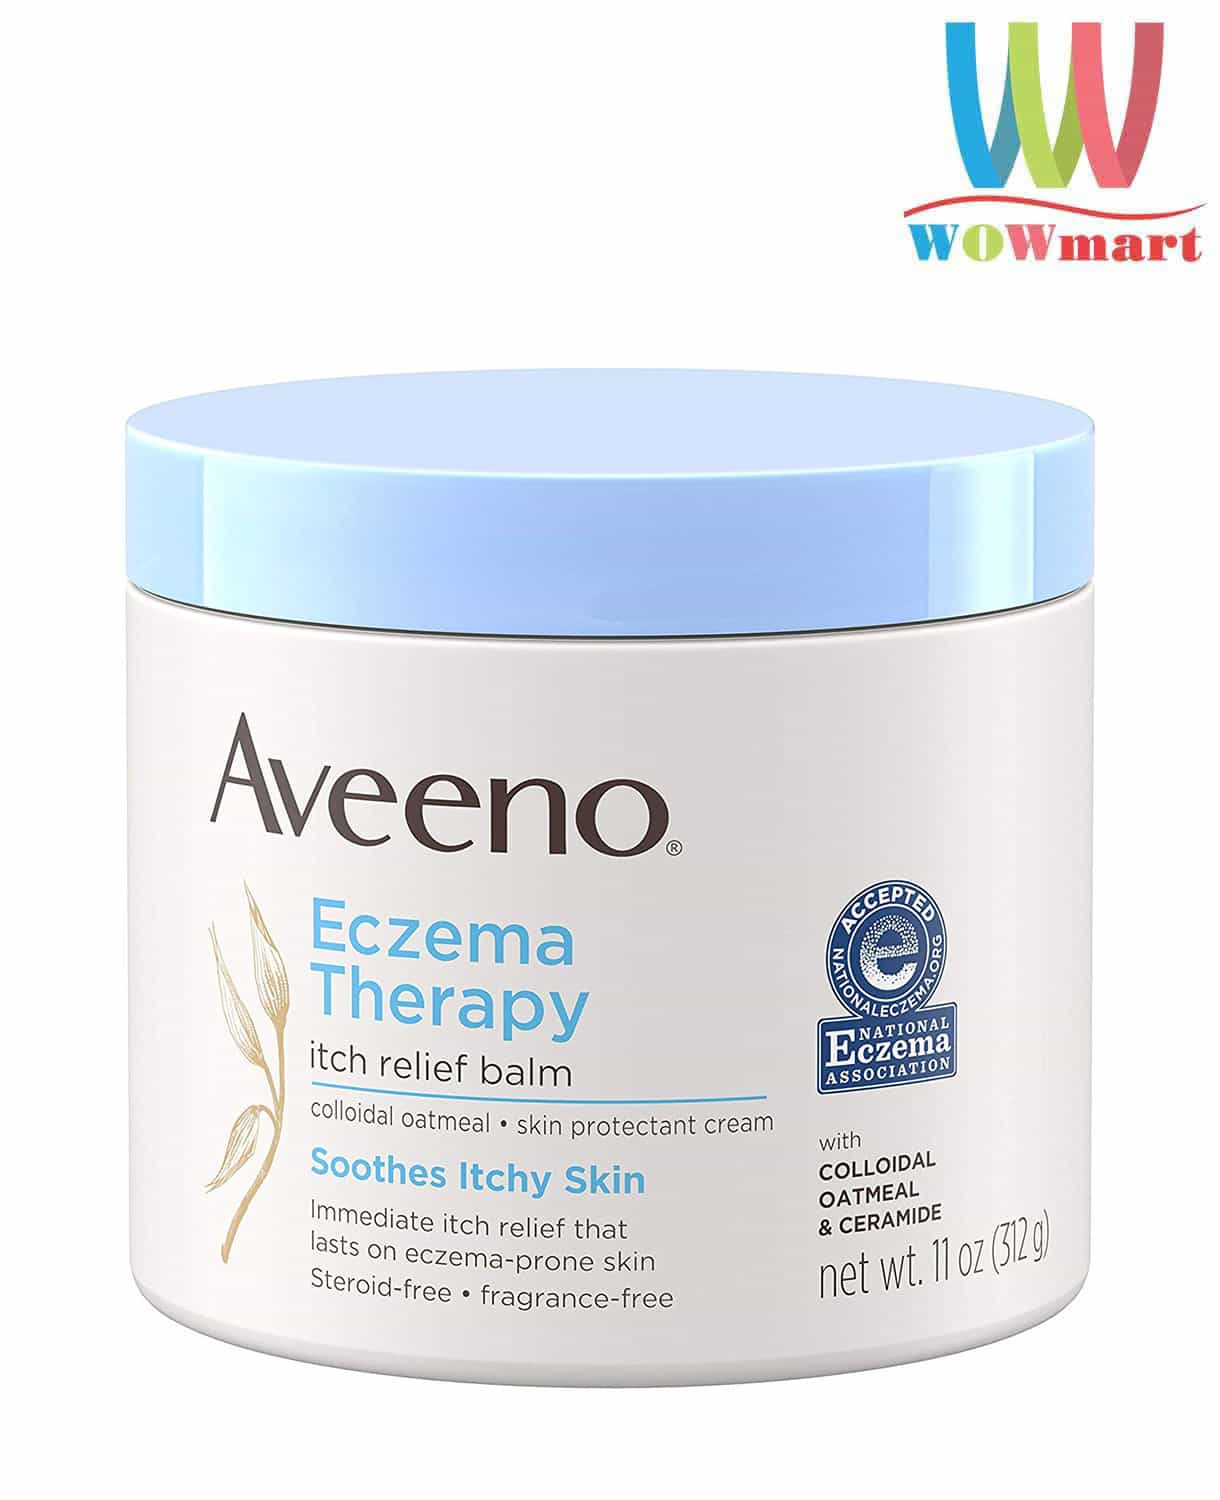 Kem Aveeno Eczema Therapy có tác dụng làm dịu da như thế nào?
